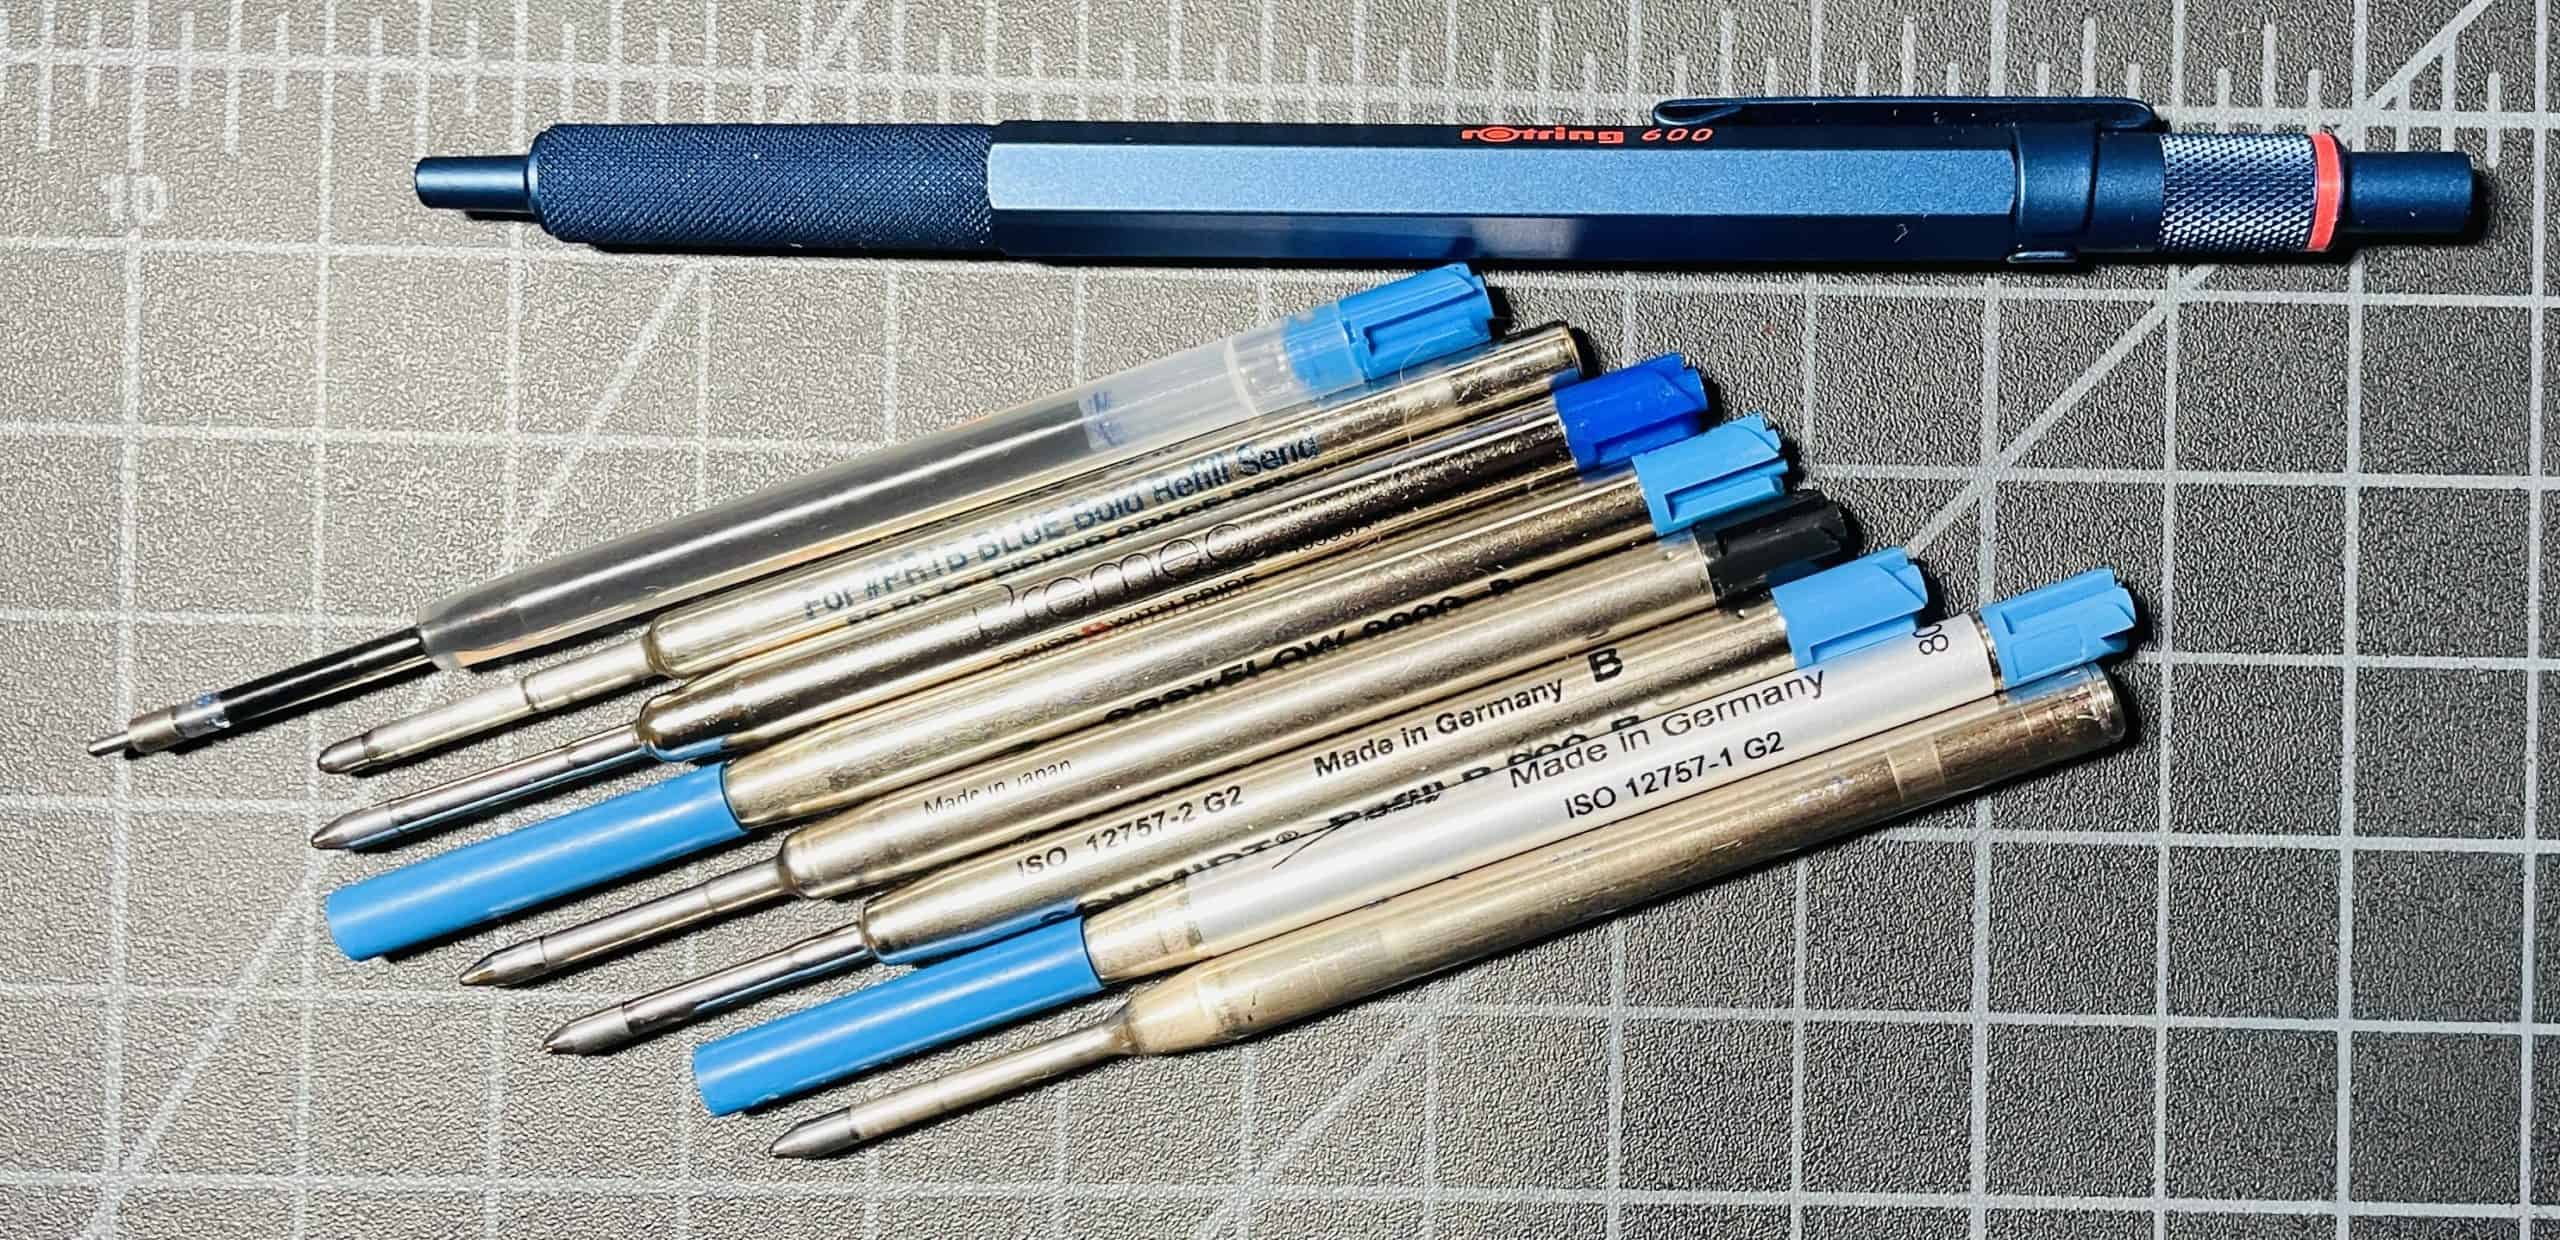 Parker Style Standard Ballpoint G2 Jumbo Giant Refill - The Pen